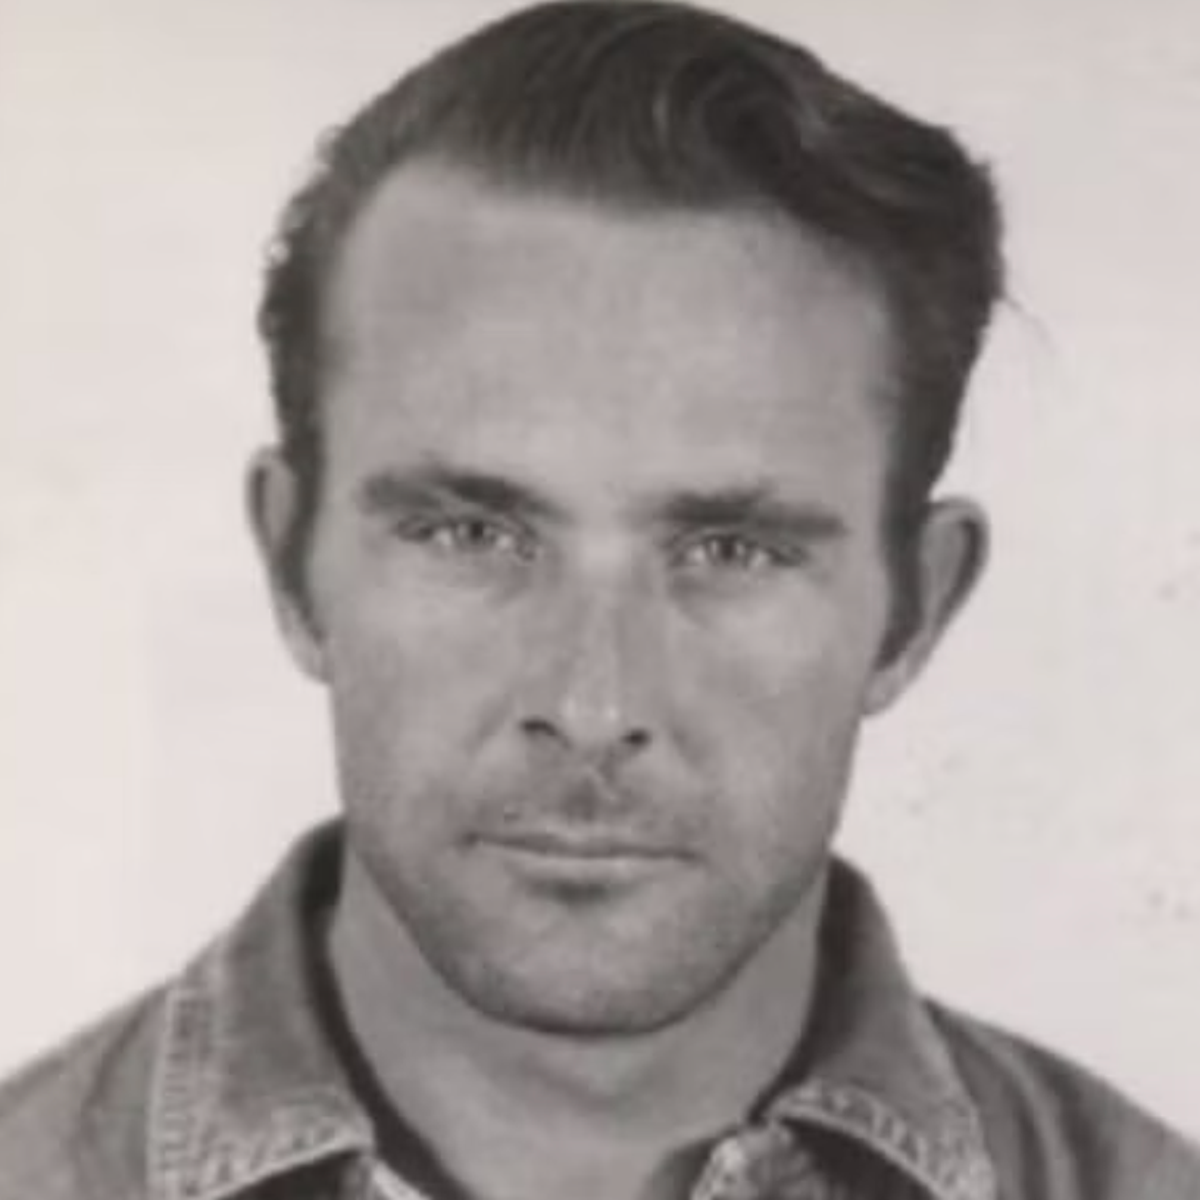 ABD polisi, 1960'larda Alcatraz'dan kaçan ve hala kaçak olabilecek üç adamın eskizlerini yayınladı